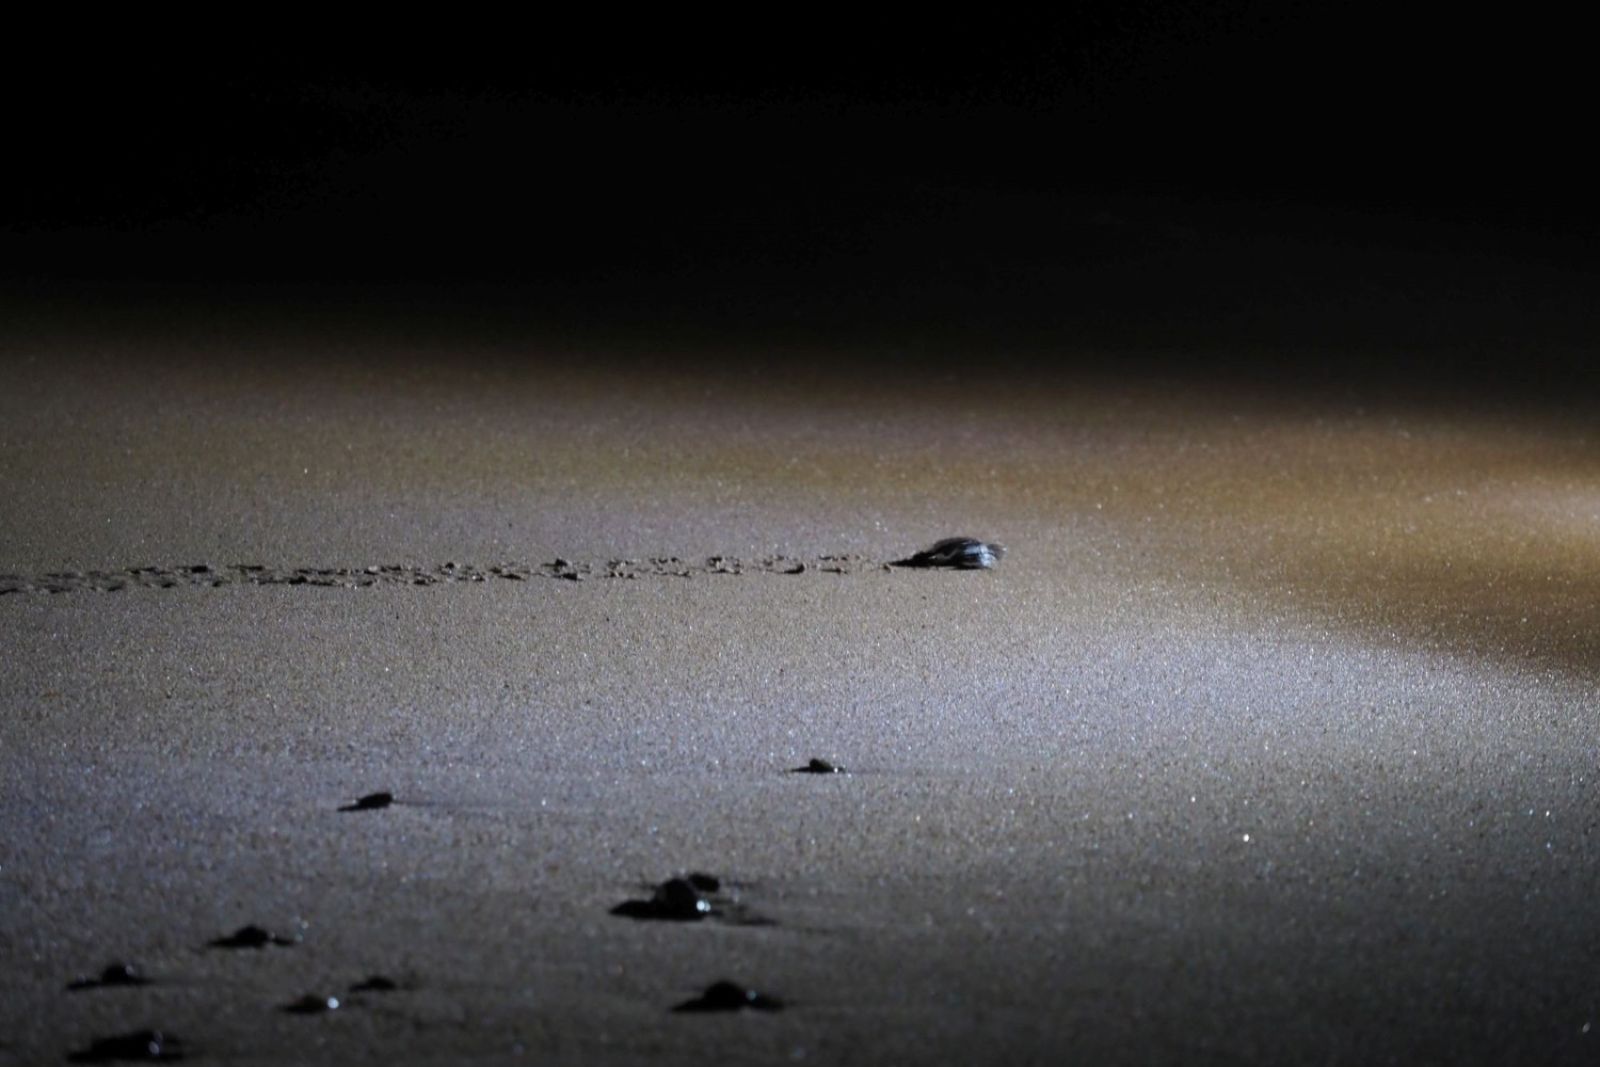 Nur mit Stirnlampe bewaffnet – Im Stockdunkel kann man die frisch geschlüpften Meeresschildkröten unter Anleitung beobachten, wie sie ihren Weg ins offene Meer und in die Freiheit finden. Gut geplant und Reservierungspflichtig!